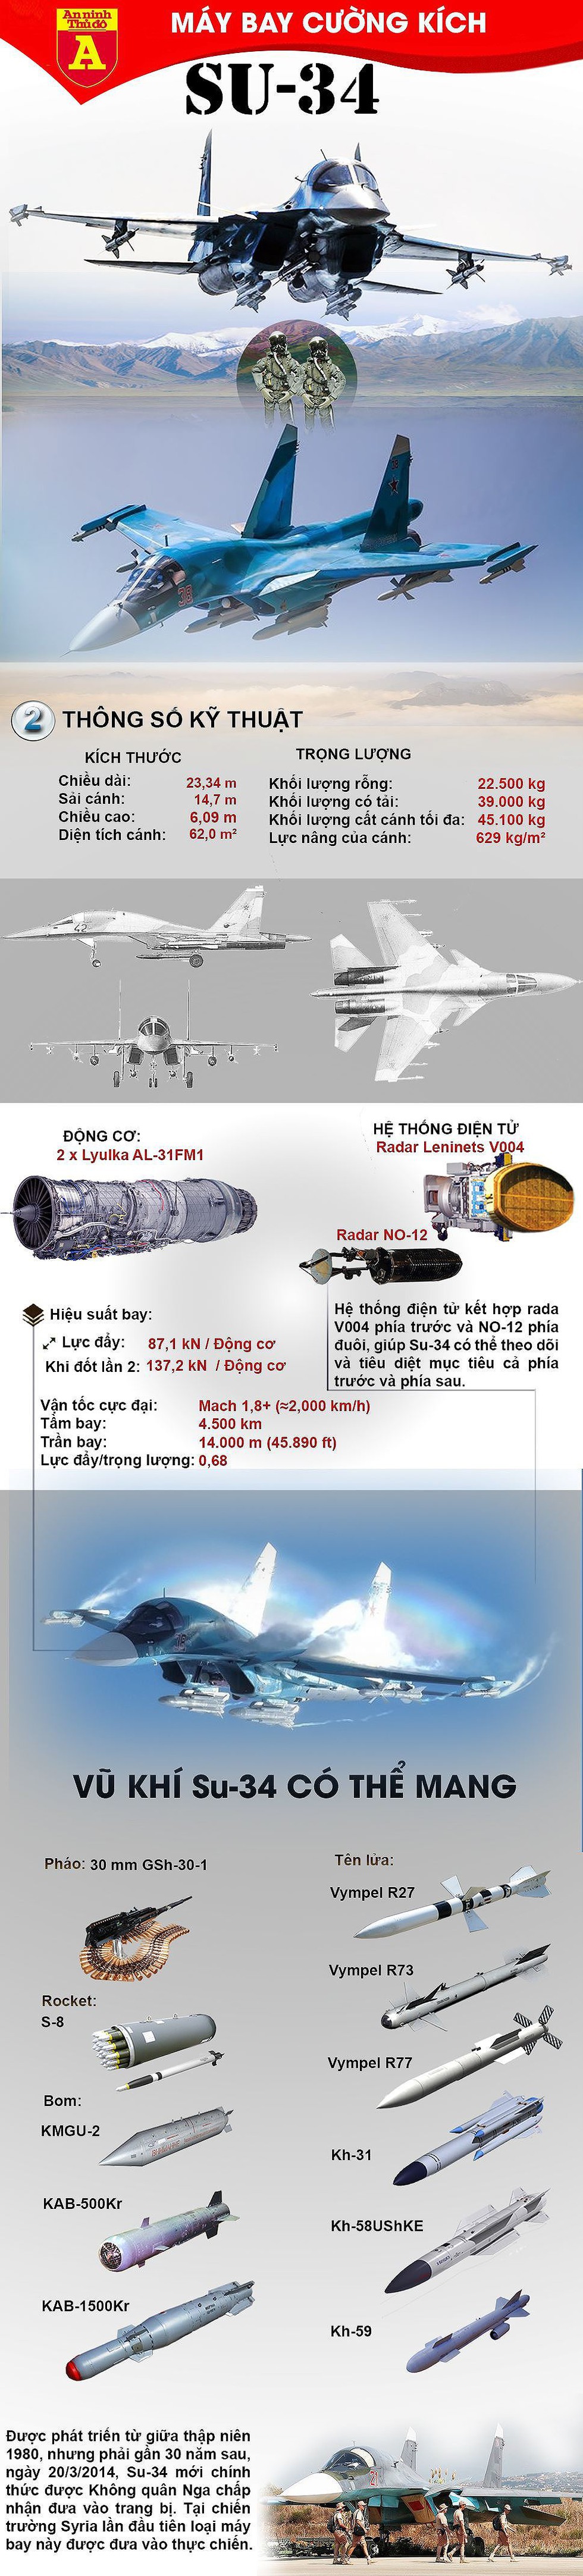 [Infographic] Hai tiêm kích bom Su-34 của Nga va vào nhau trên không - Ảnh 1